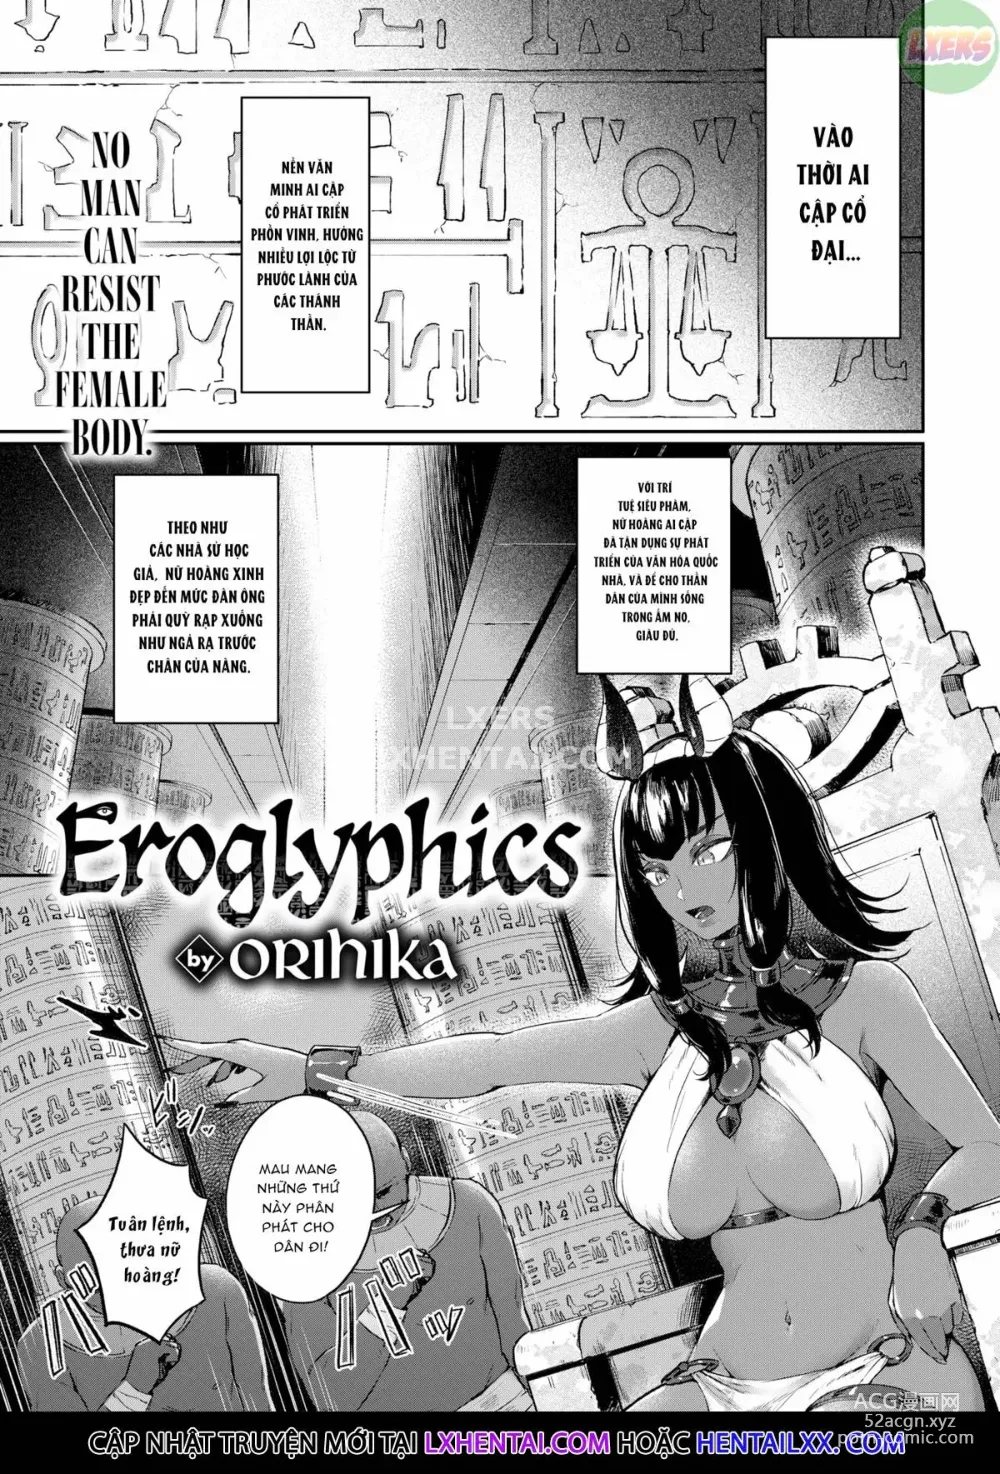 Page 1 of manga Doerogurifu (uncensored)